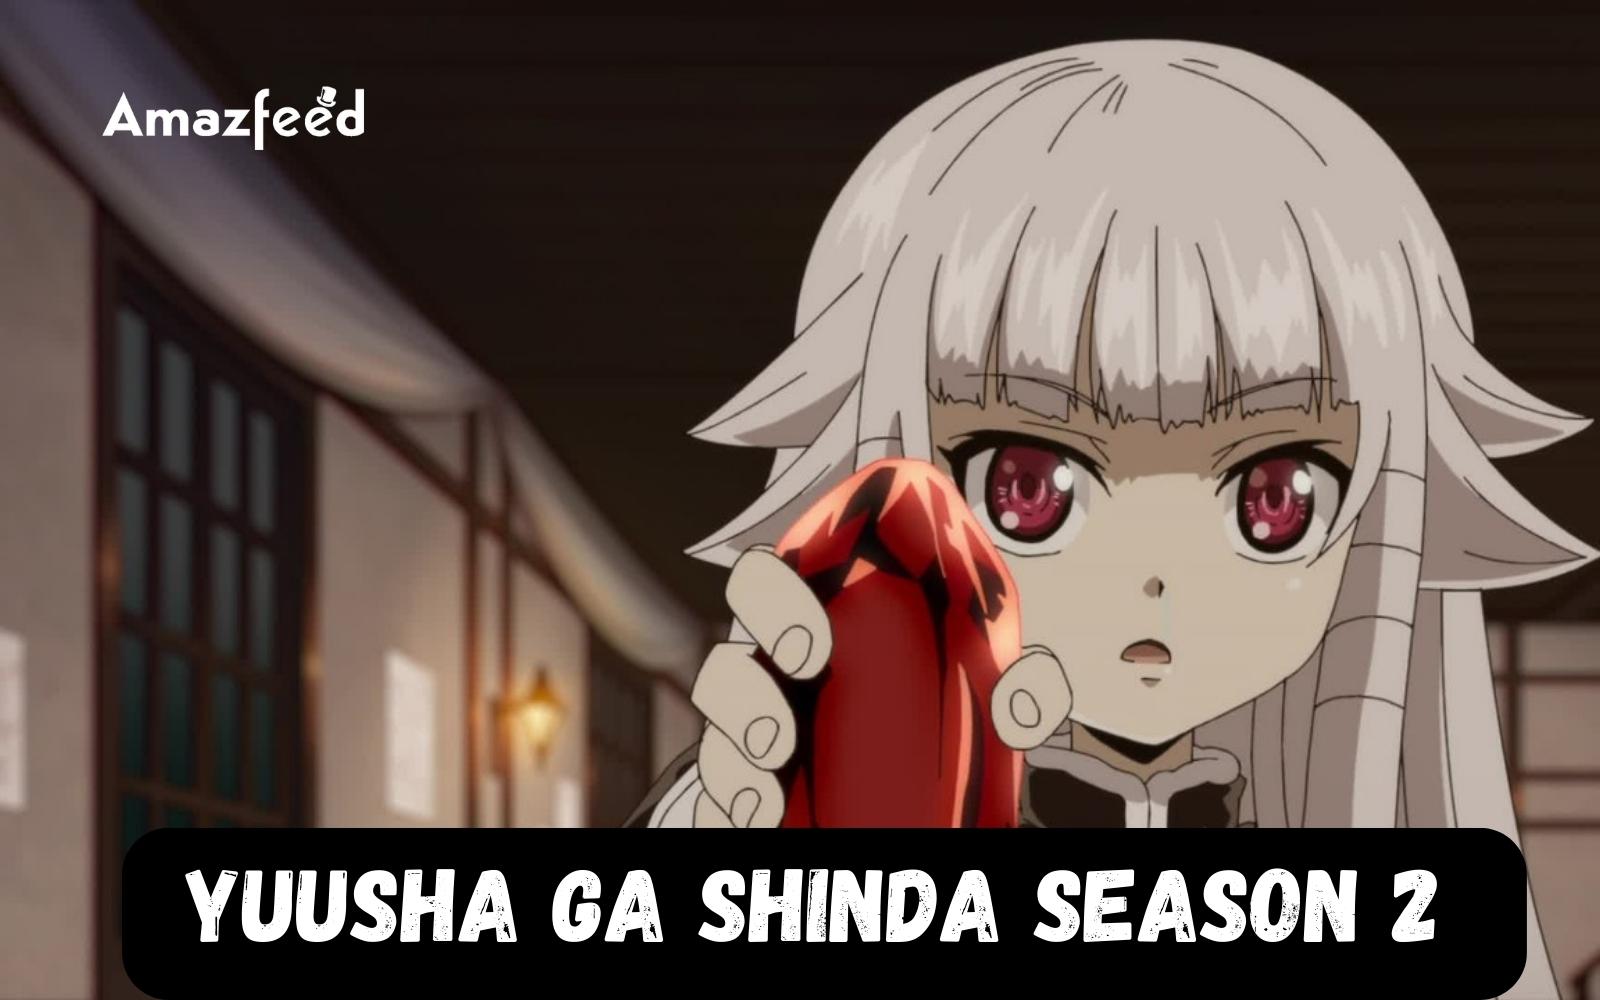 O Anime Yuusha ga Shinda! Vai Estrear na Temporada Primavera de